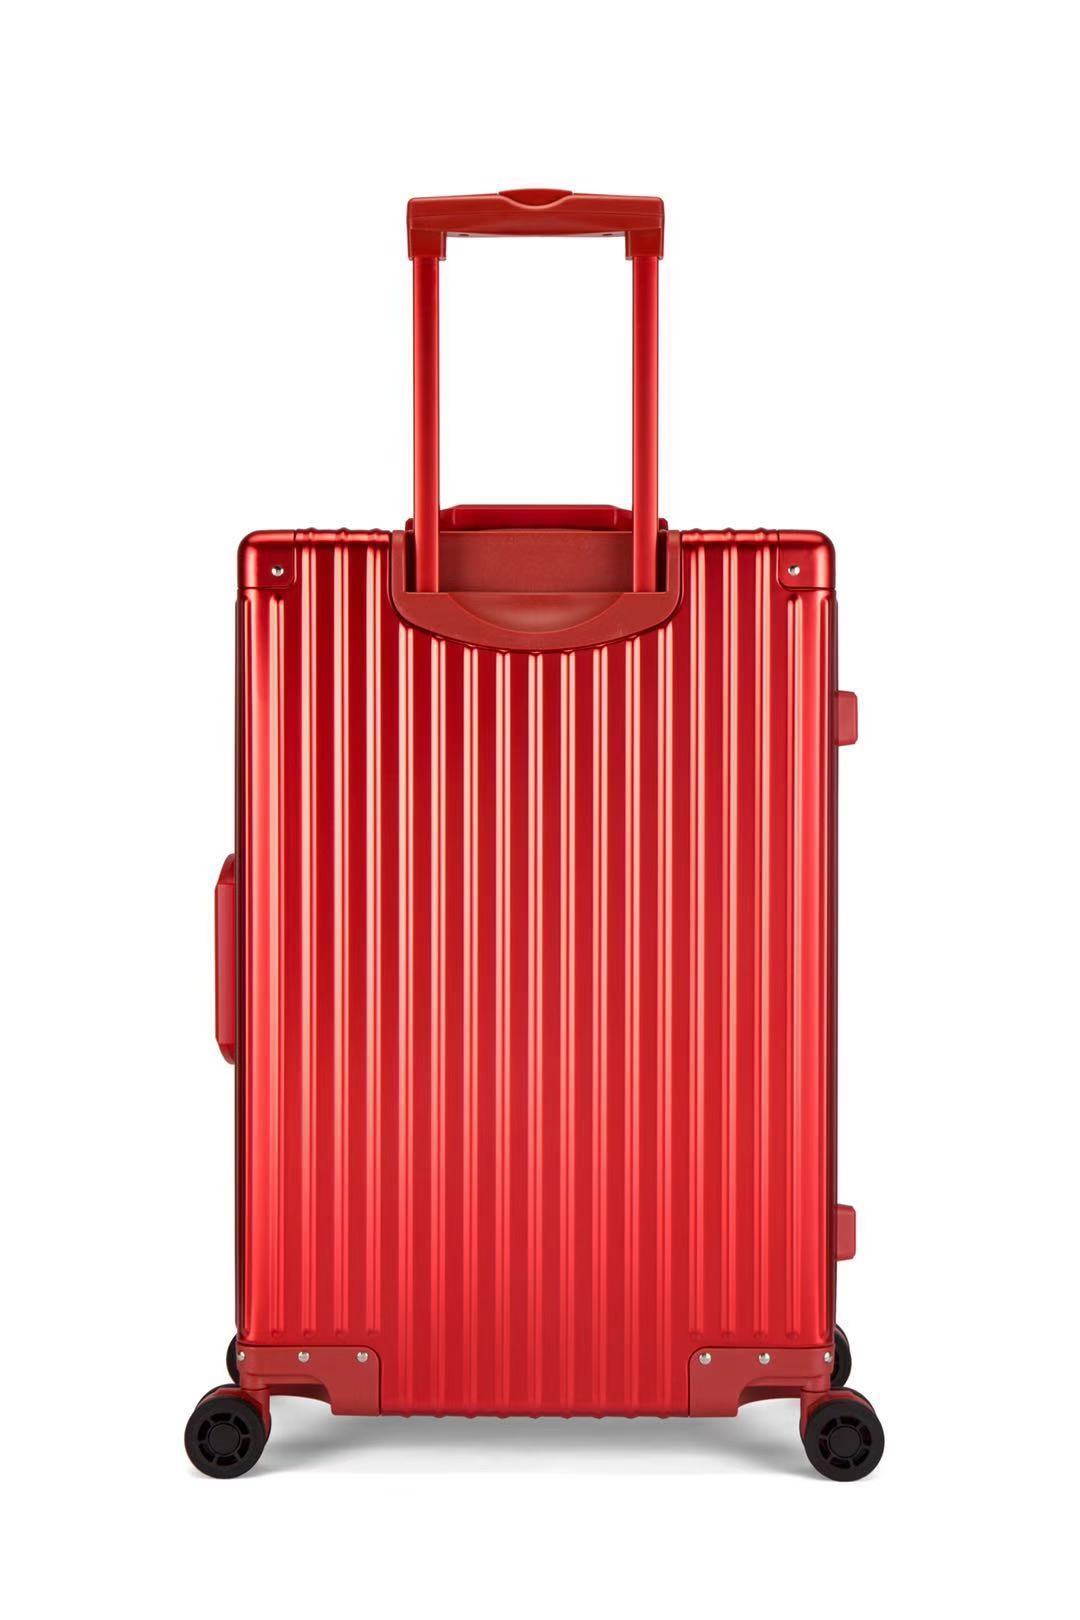 喜来登SHX-2409R潮流时尚铝镁合金拉杆箱红色24寸红色(个)